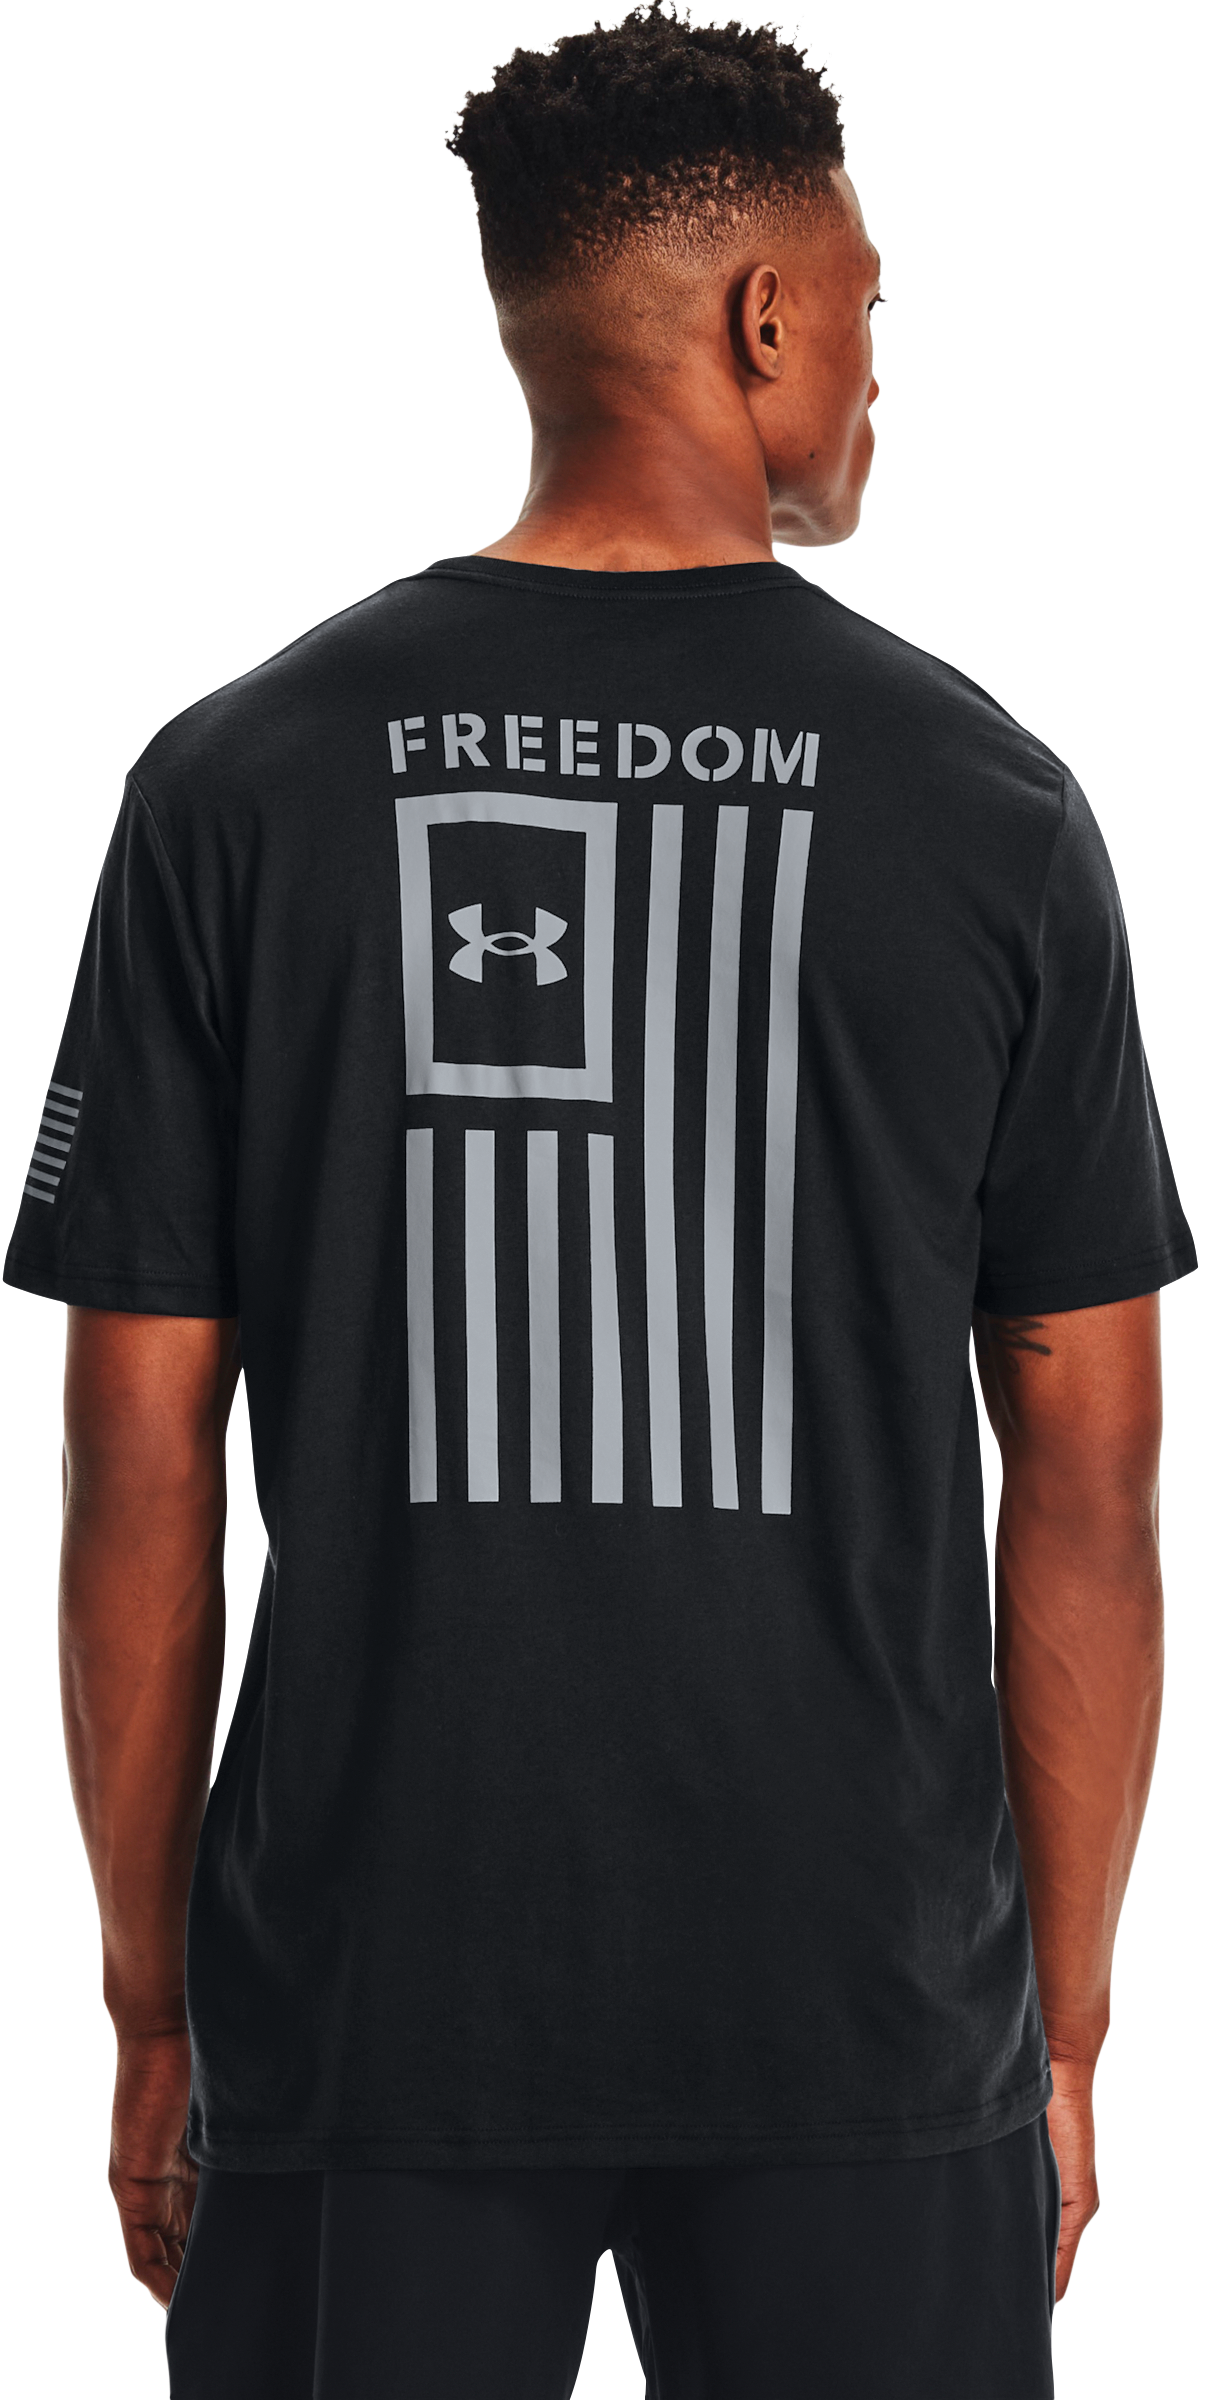 Under Armour Freedom Flag Short-Sleeve T-Shirt for Men - Black/Steel - LT